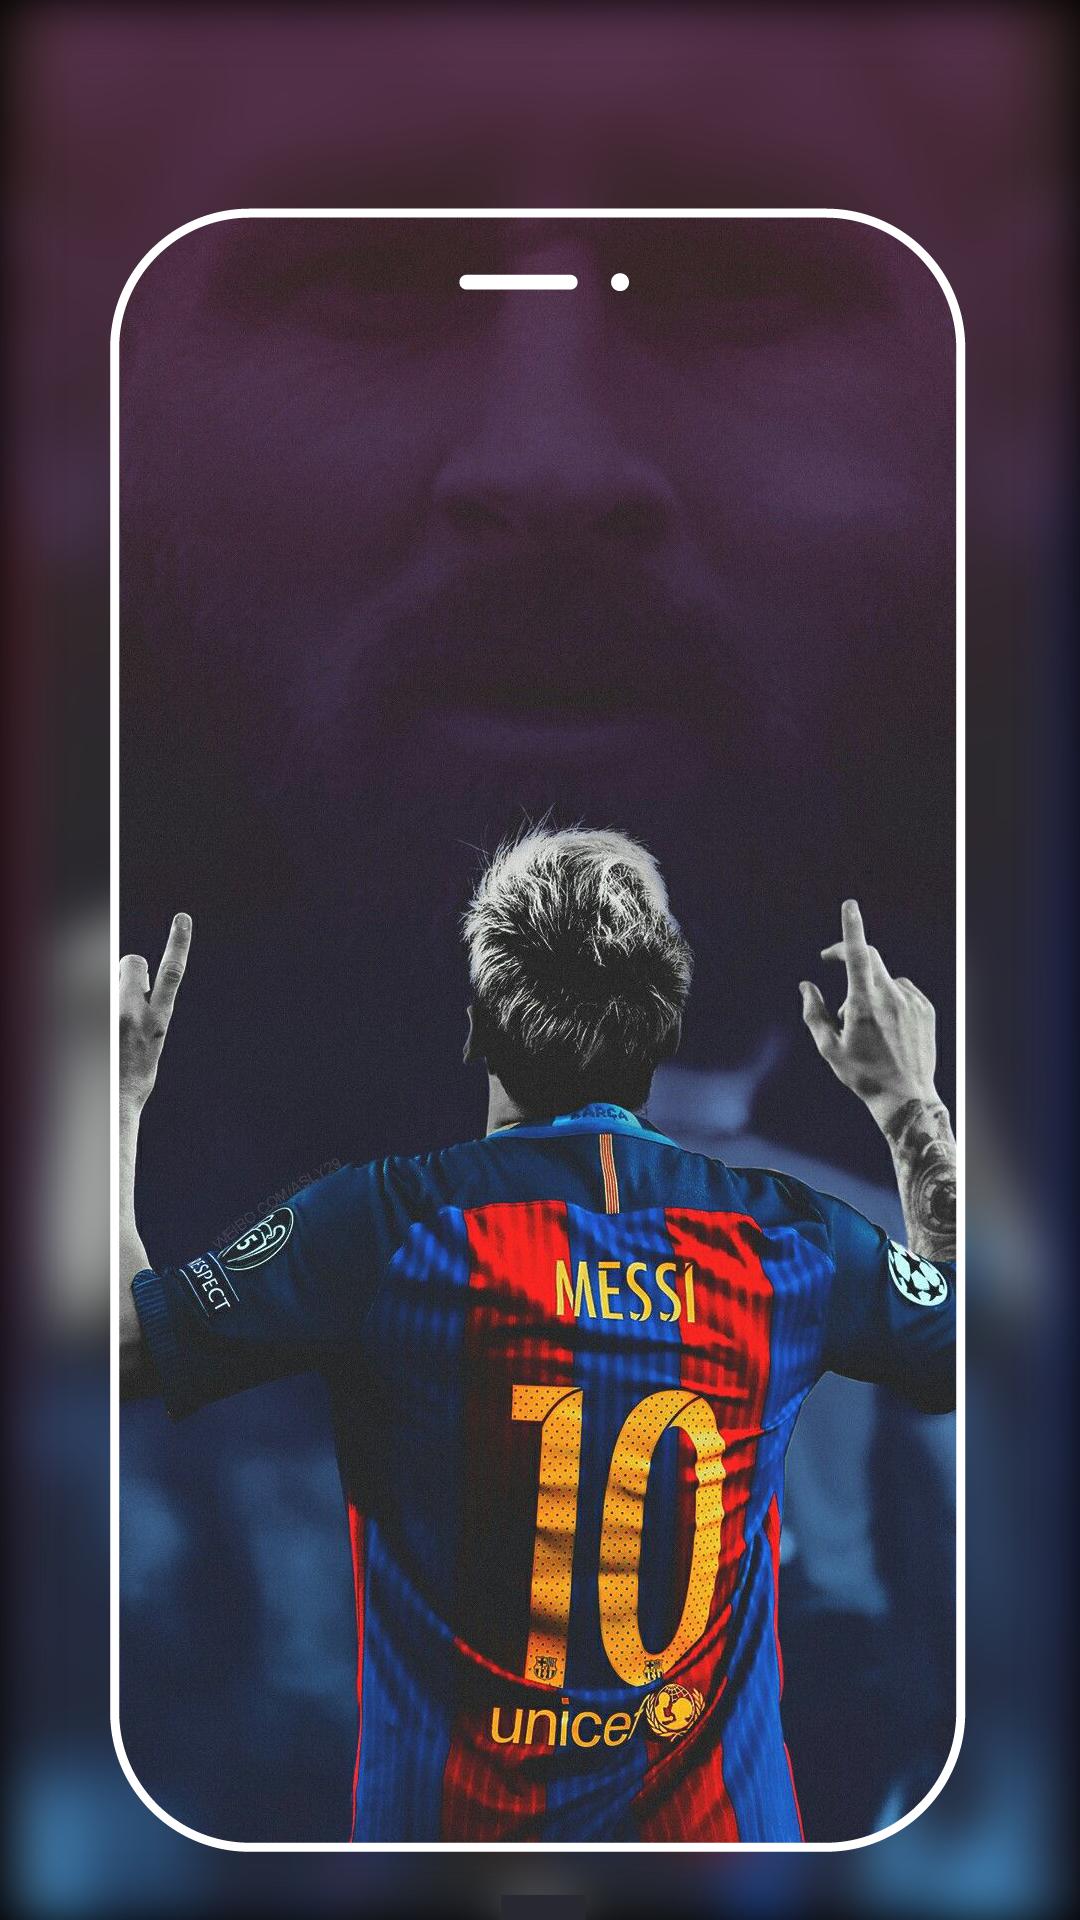 Lionel Messi wallpaper: Những hình nền đẹp về Lionel Messi sẽ khiến bạn ngay lập tức chìm đắm trong thế giới của người hâm mộ bóng đá. Từ giờ trở về sau, trong những lúc khó khăn hay tẻ nhạt, bạn có thể mở điện thoại và chiêm ngưỡng những bức ảnh của ông vua bóng đá.